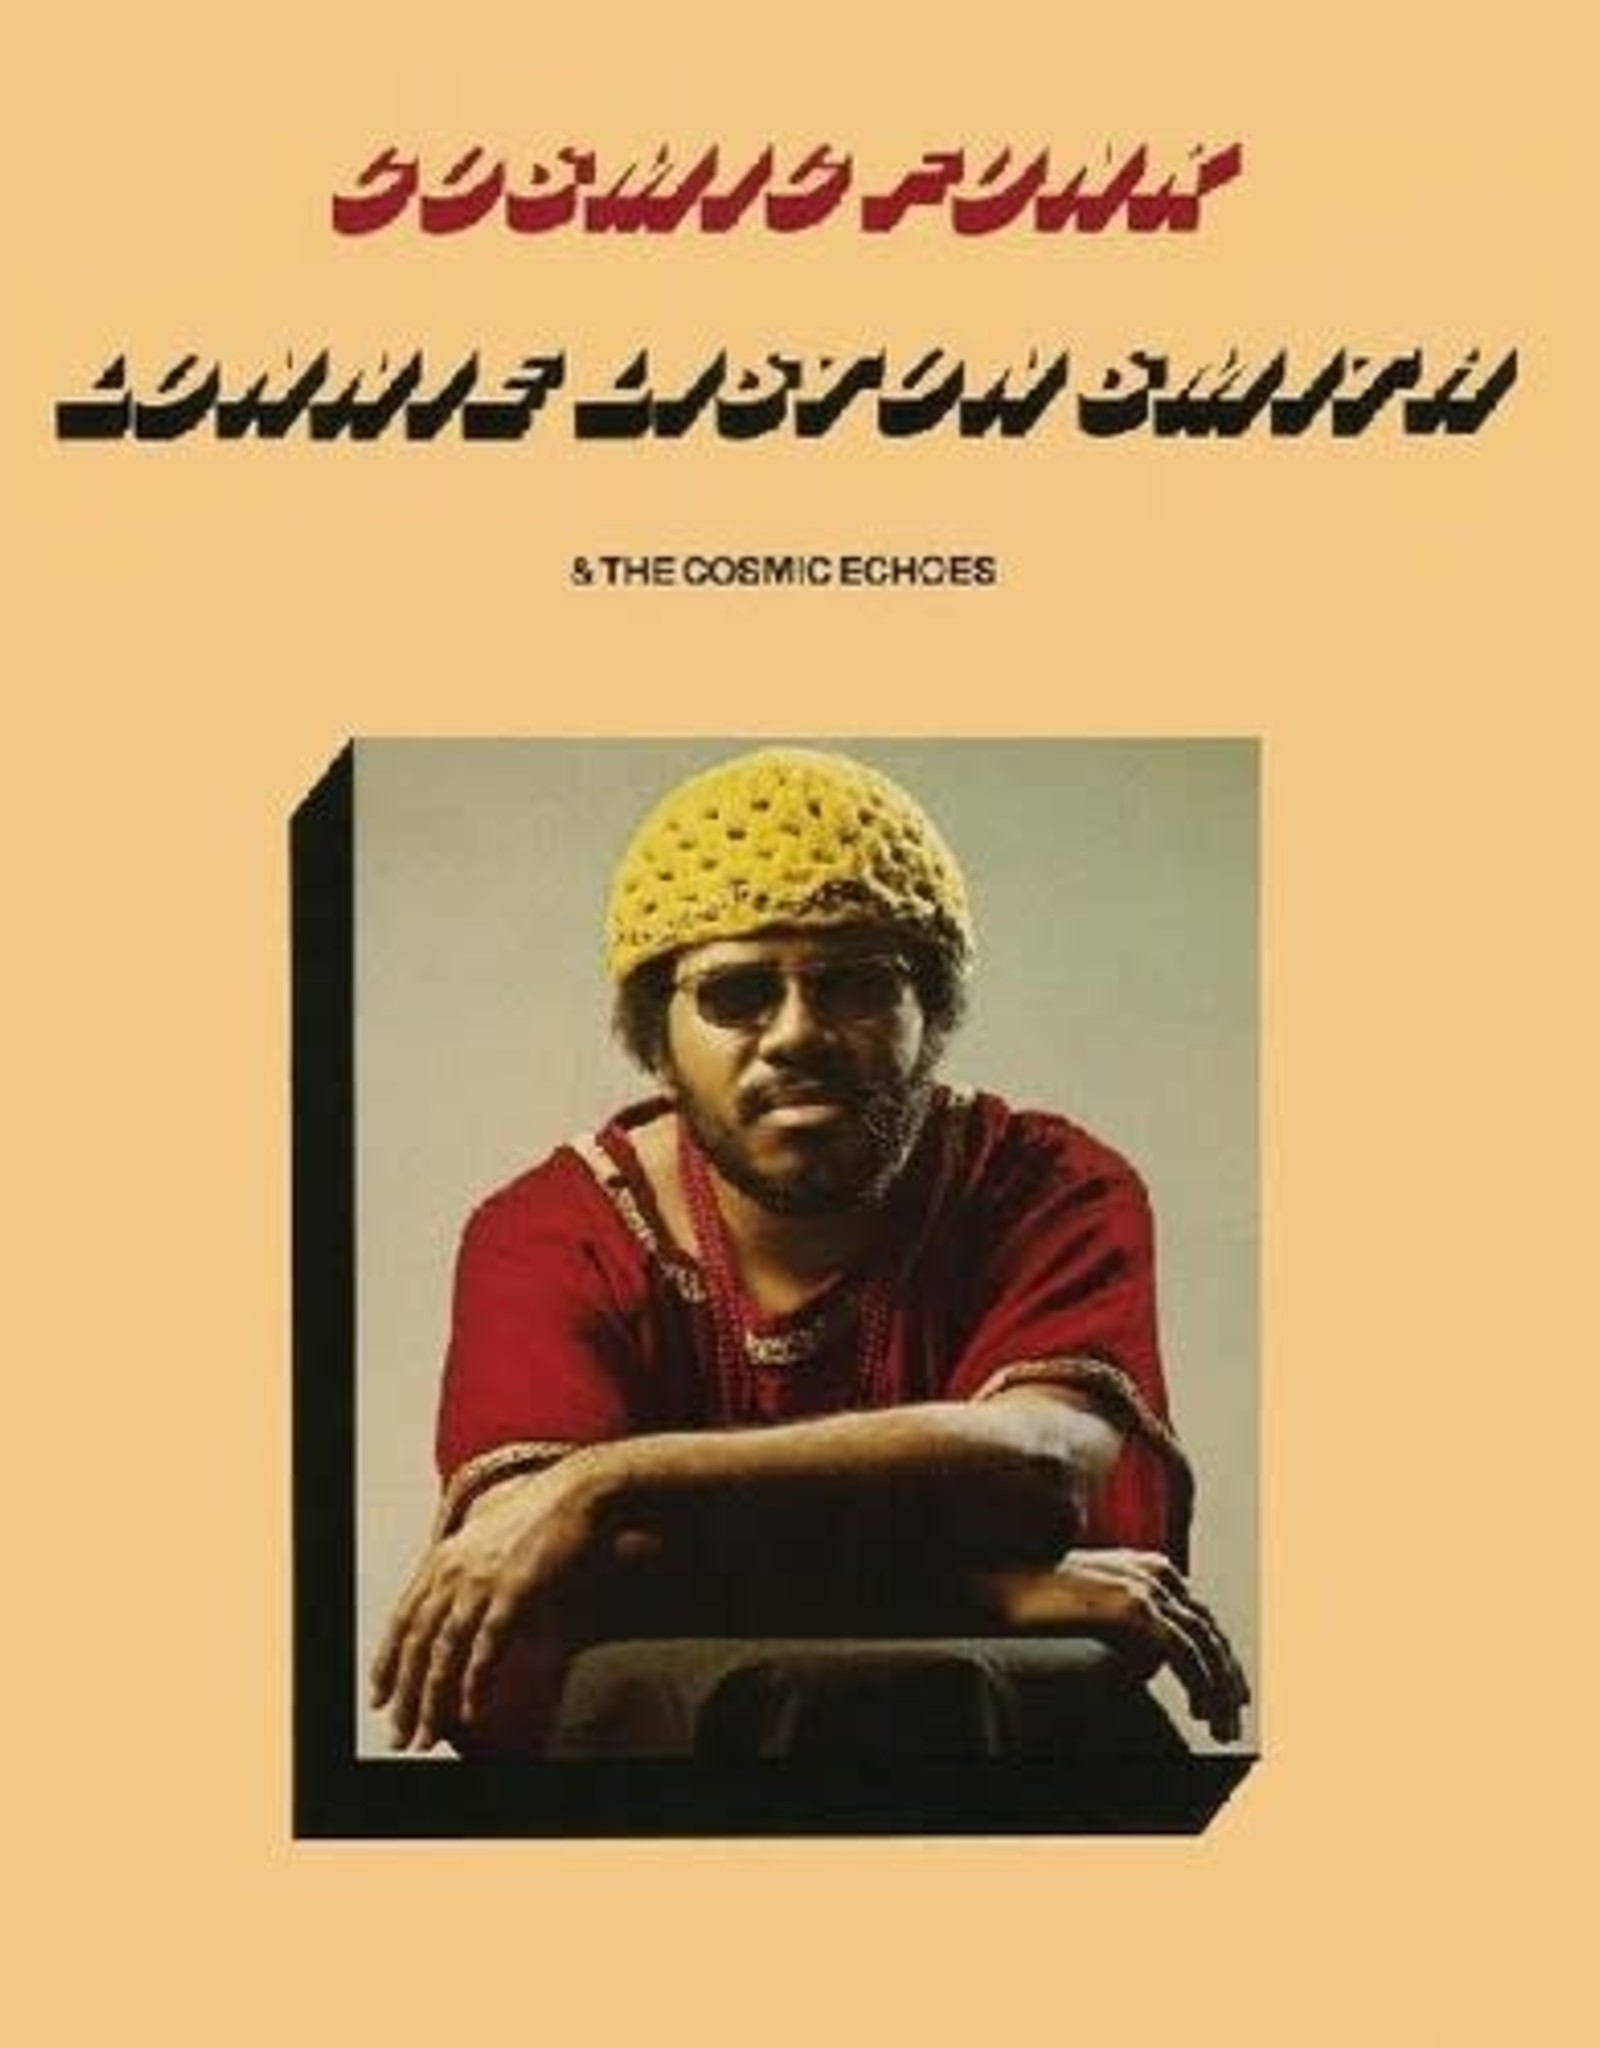 Lonnie Liston-Smith - Cosmic Funk